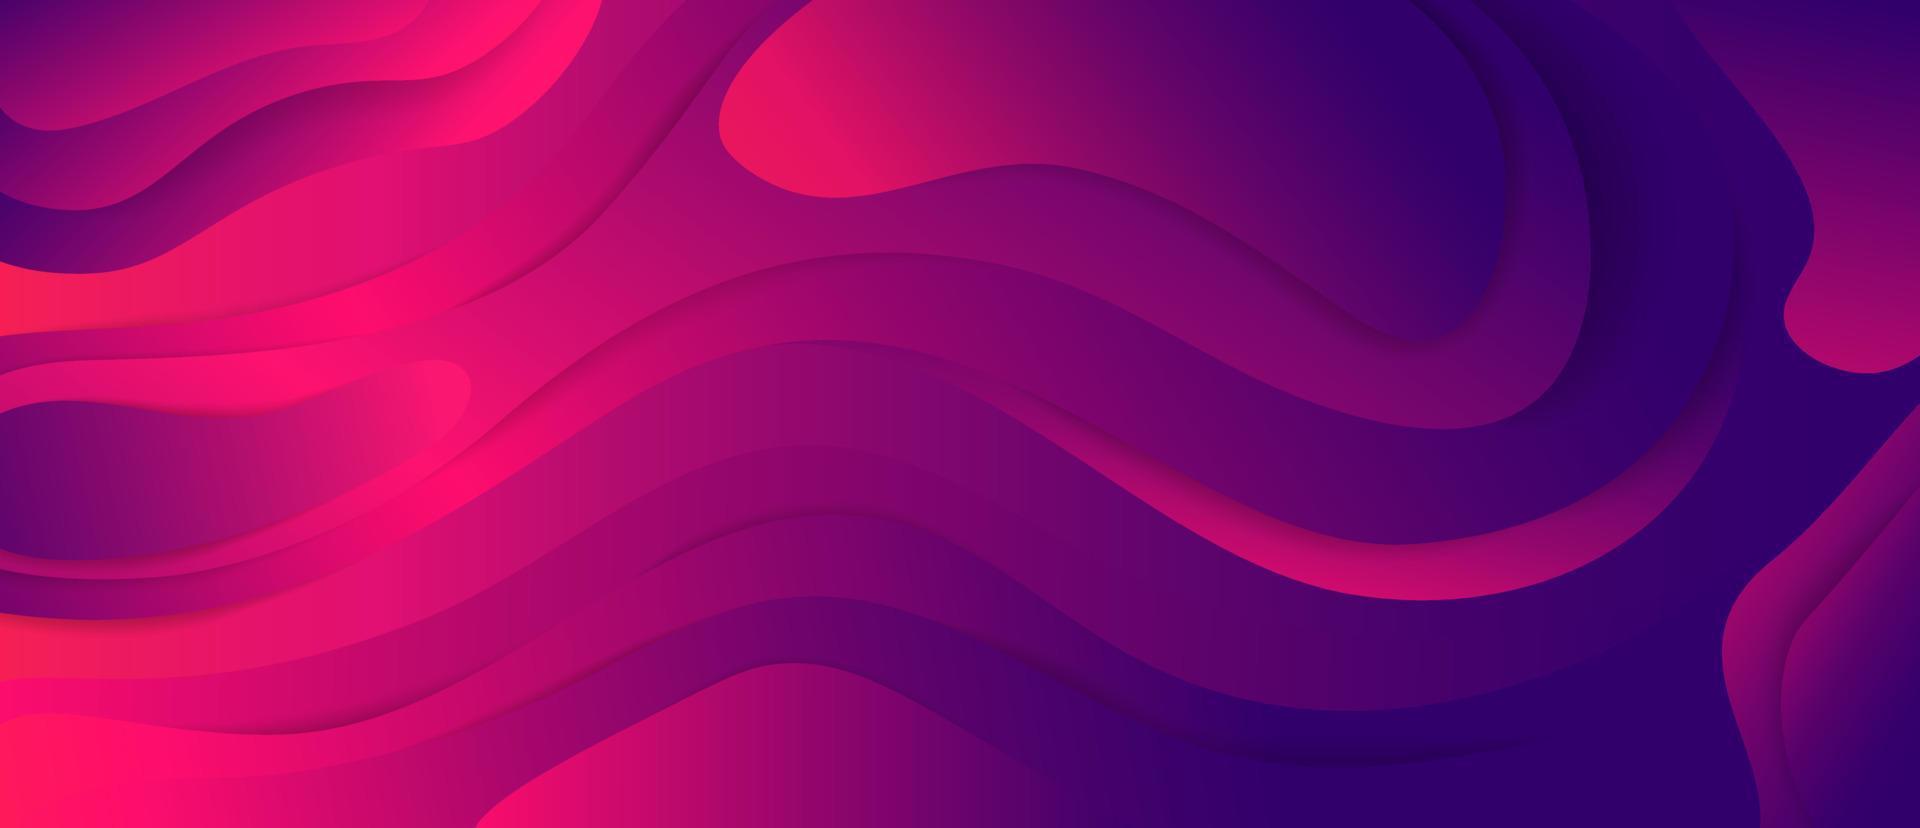 trogen färgrik lutning lila och rosa Vinka strömma 3d bakgrund vektor grafisk illustration. abstrakt färgad geometrisk flytande yta ljus dekorativ design bakgrund